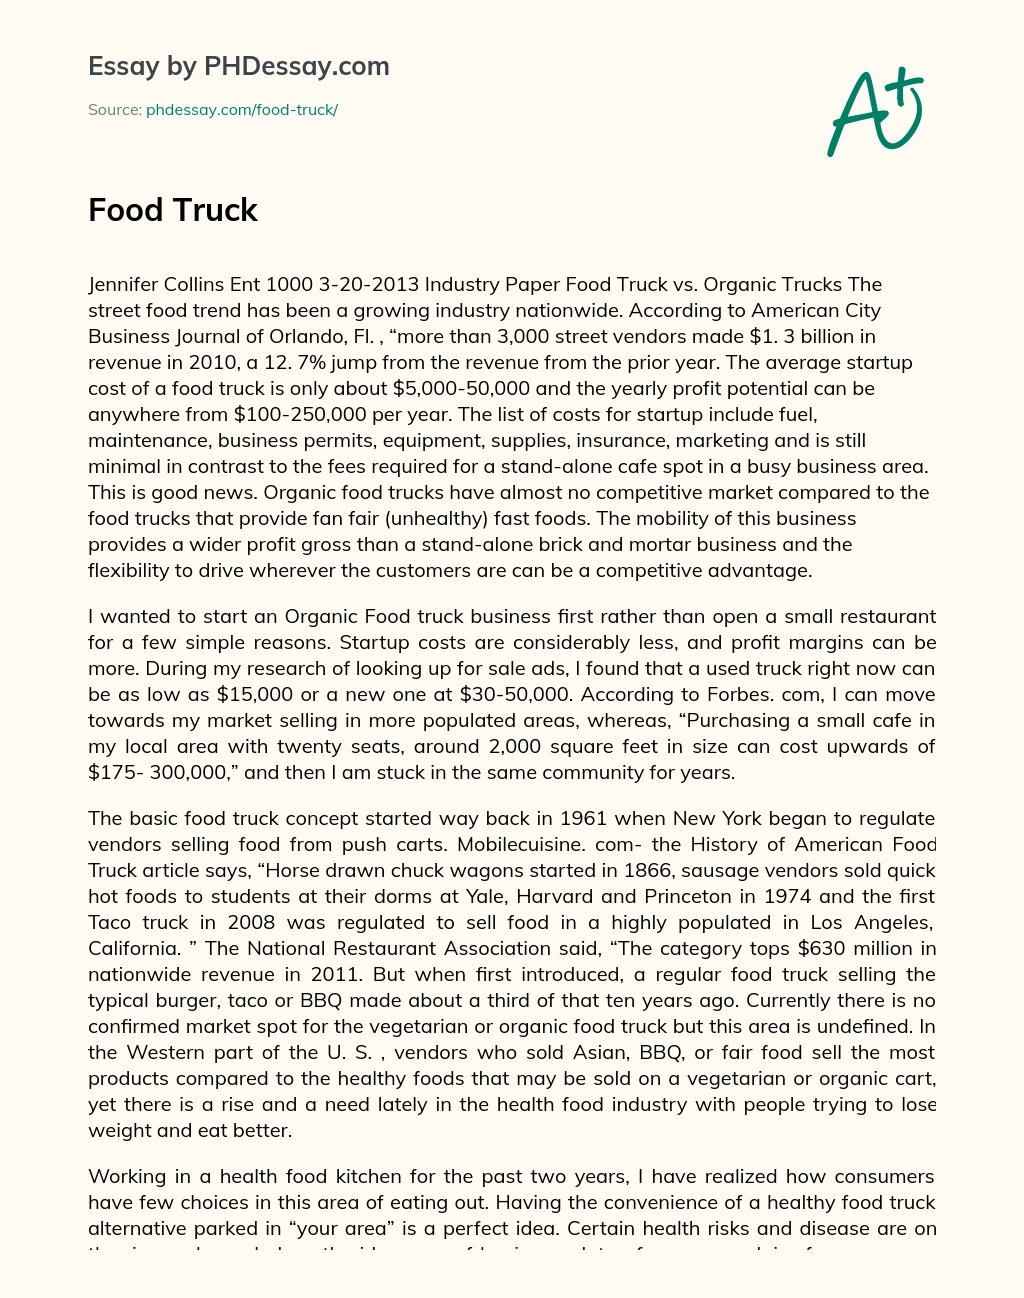 Street Food Trend: Food Truck vs. Organic Trucks essay